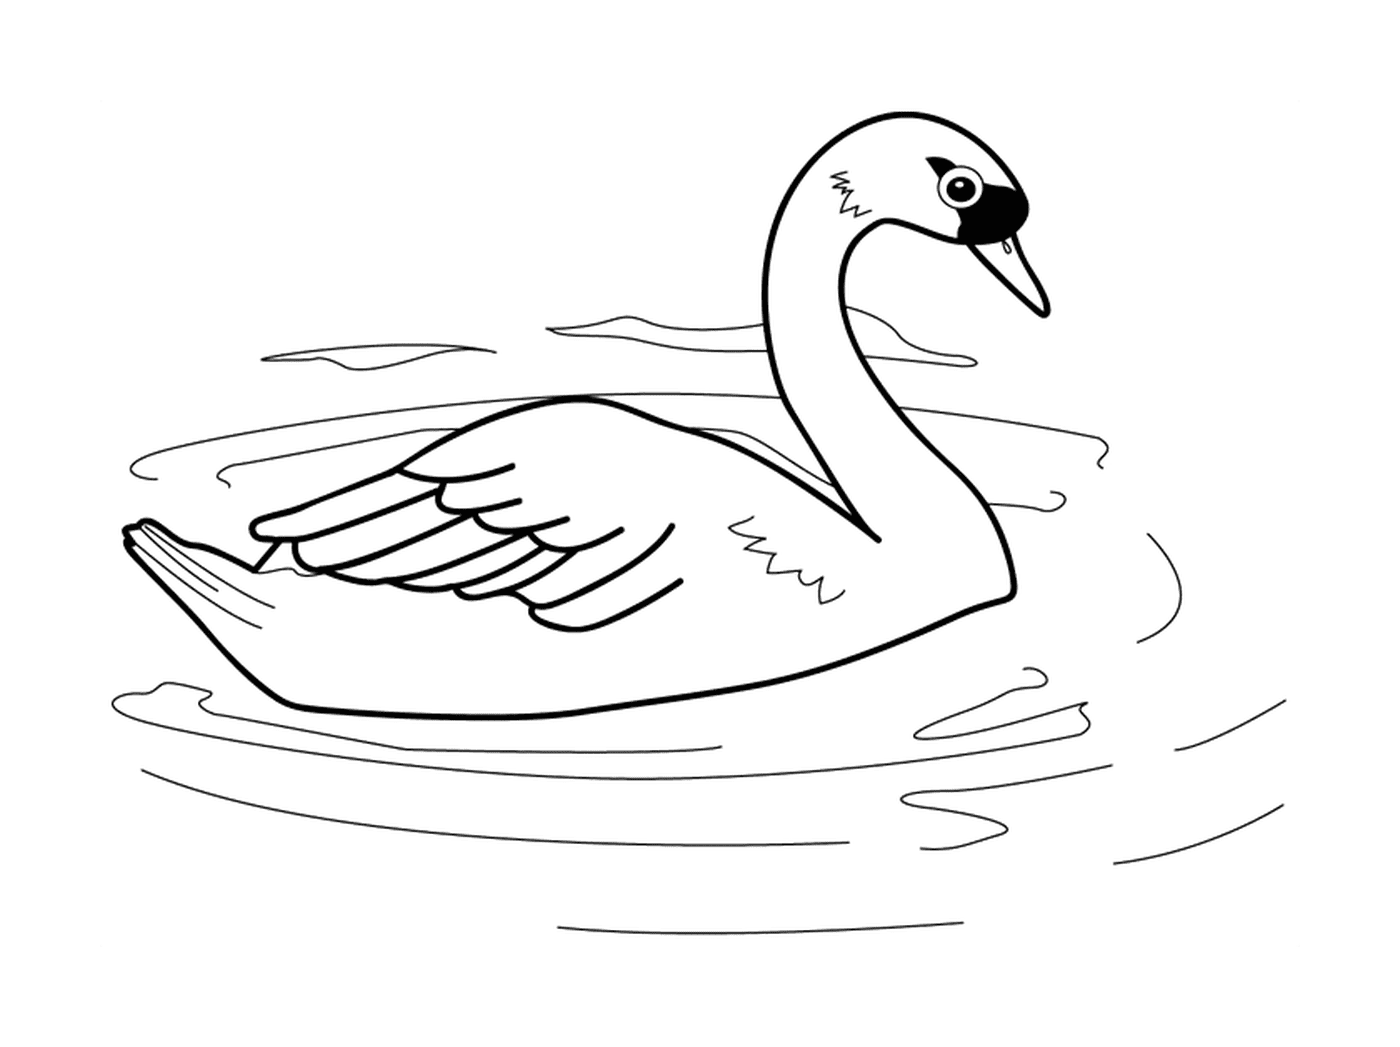  Um cisne na água 